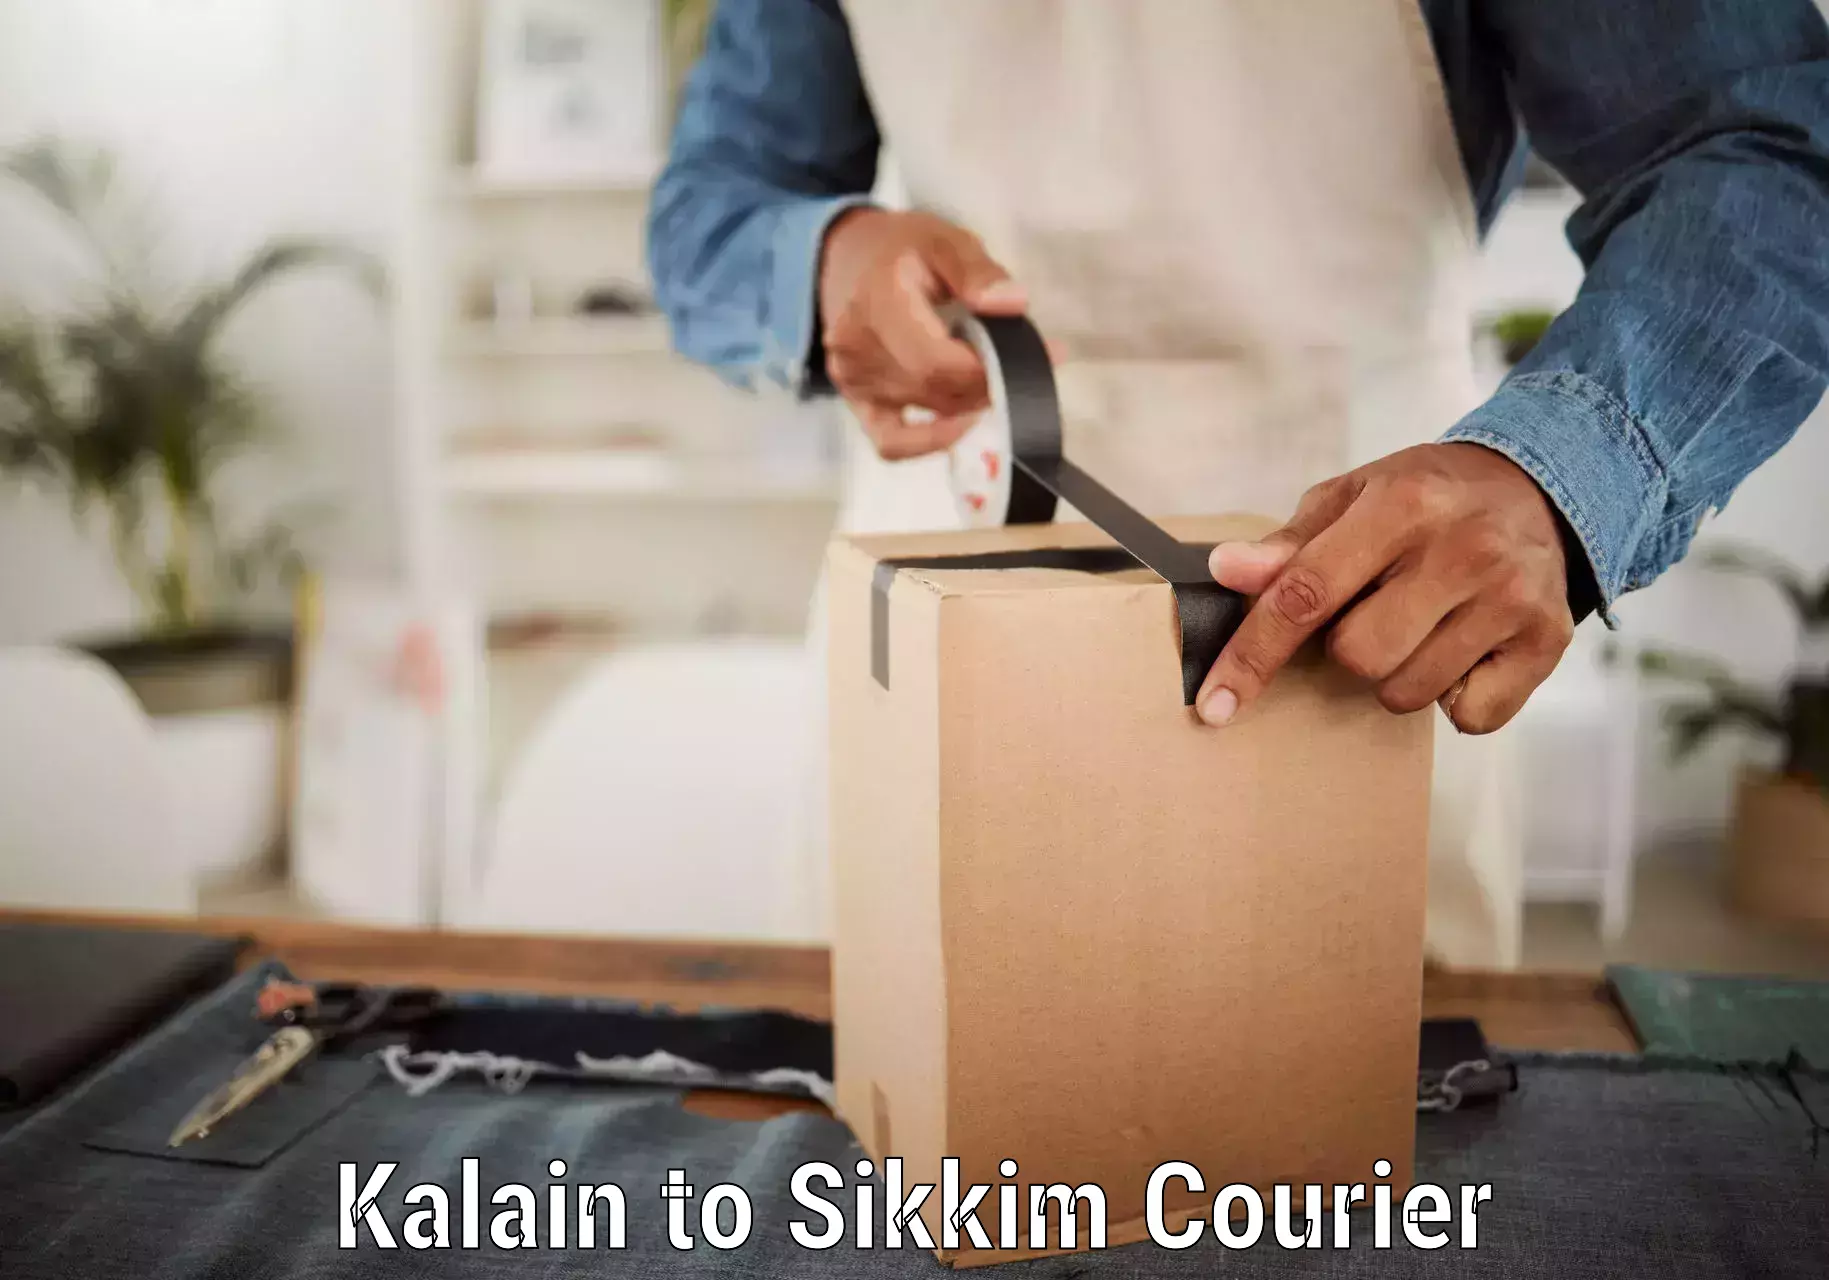 Quick dispatch service Kalain to Sikkim